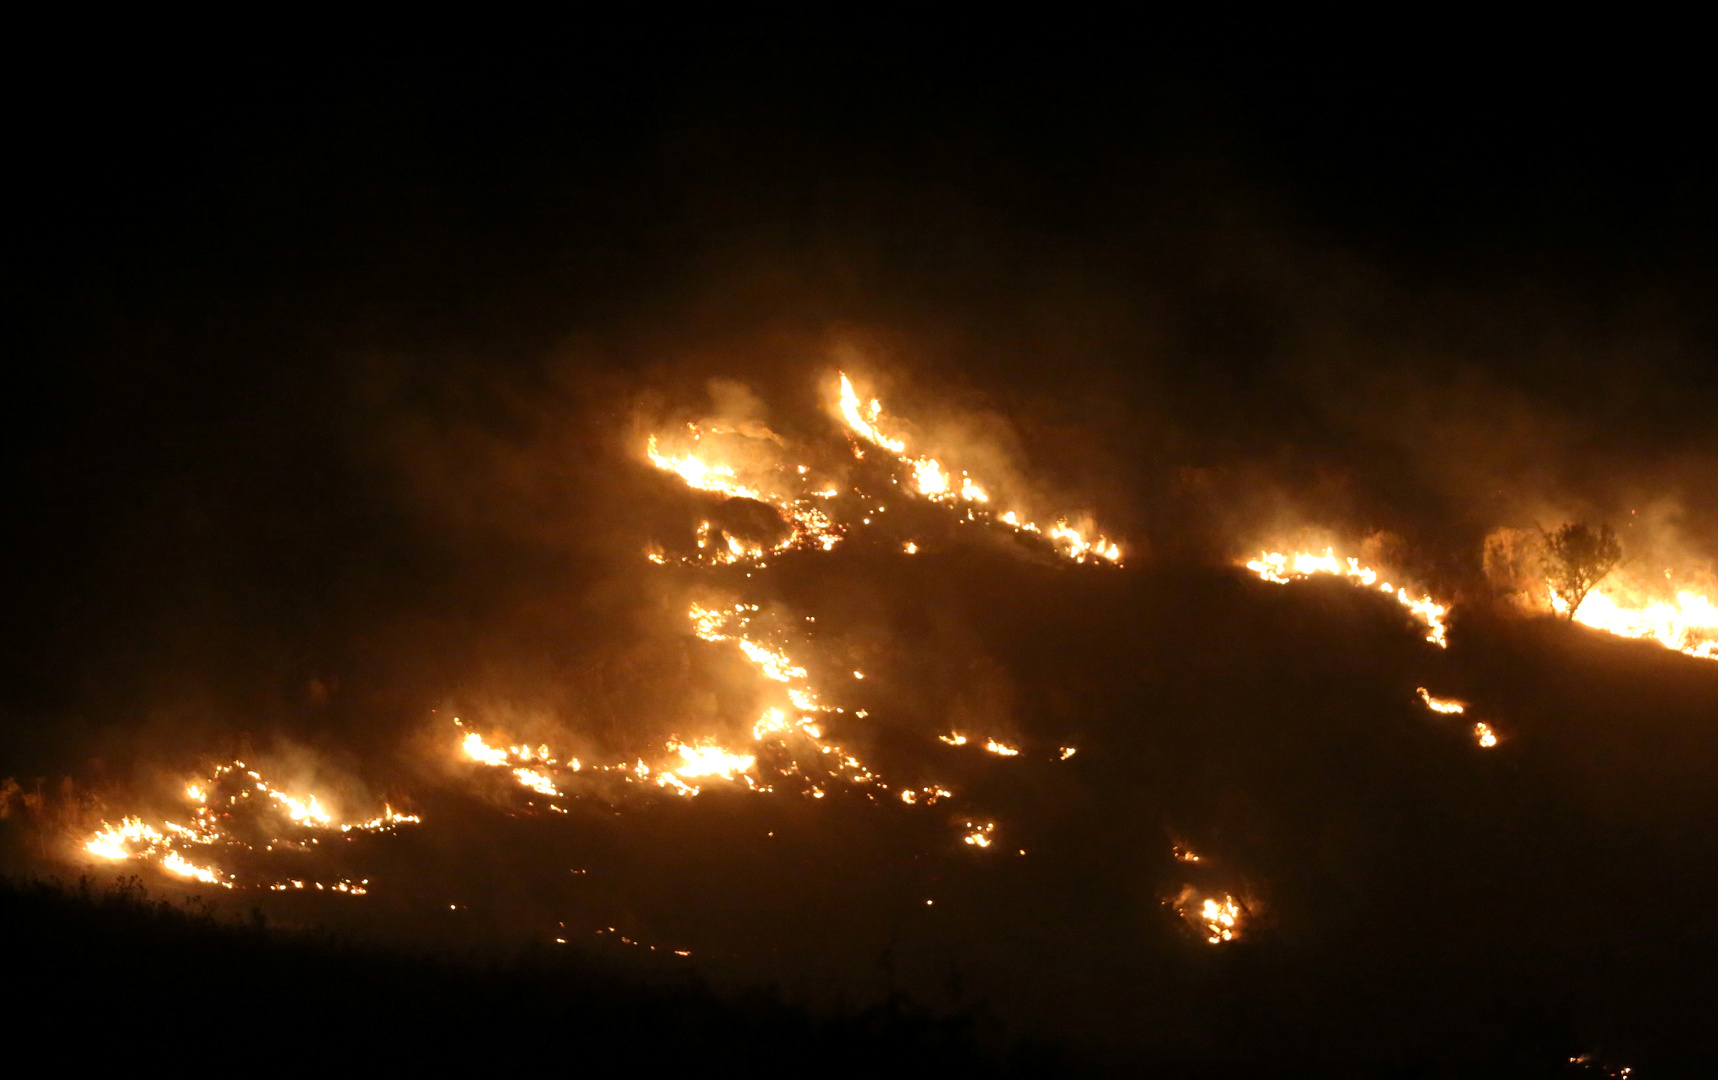 حريق كبير في جنوب لبنان ومناشدات للمساعدة السريعة  (فيديو)